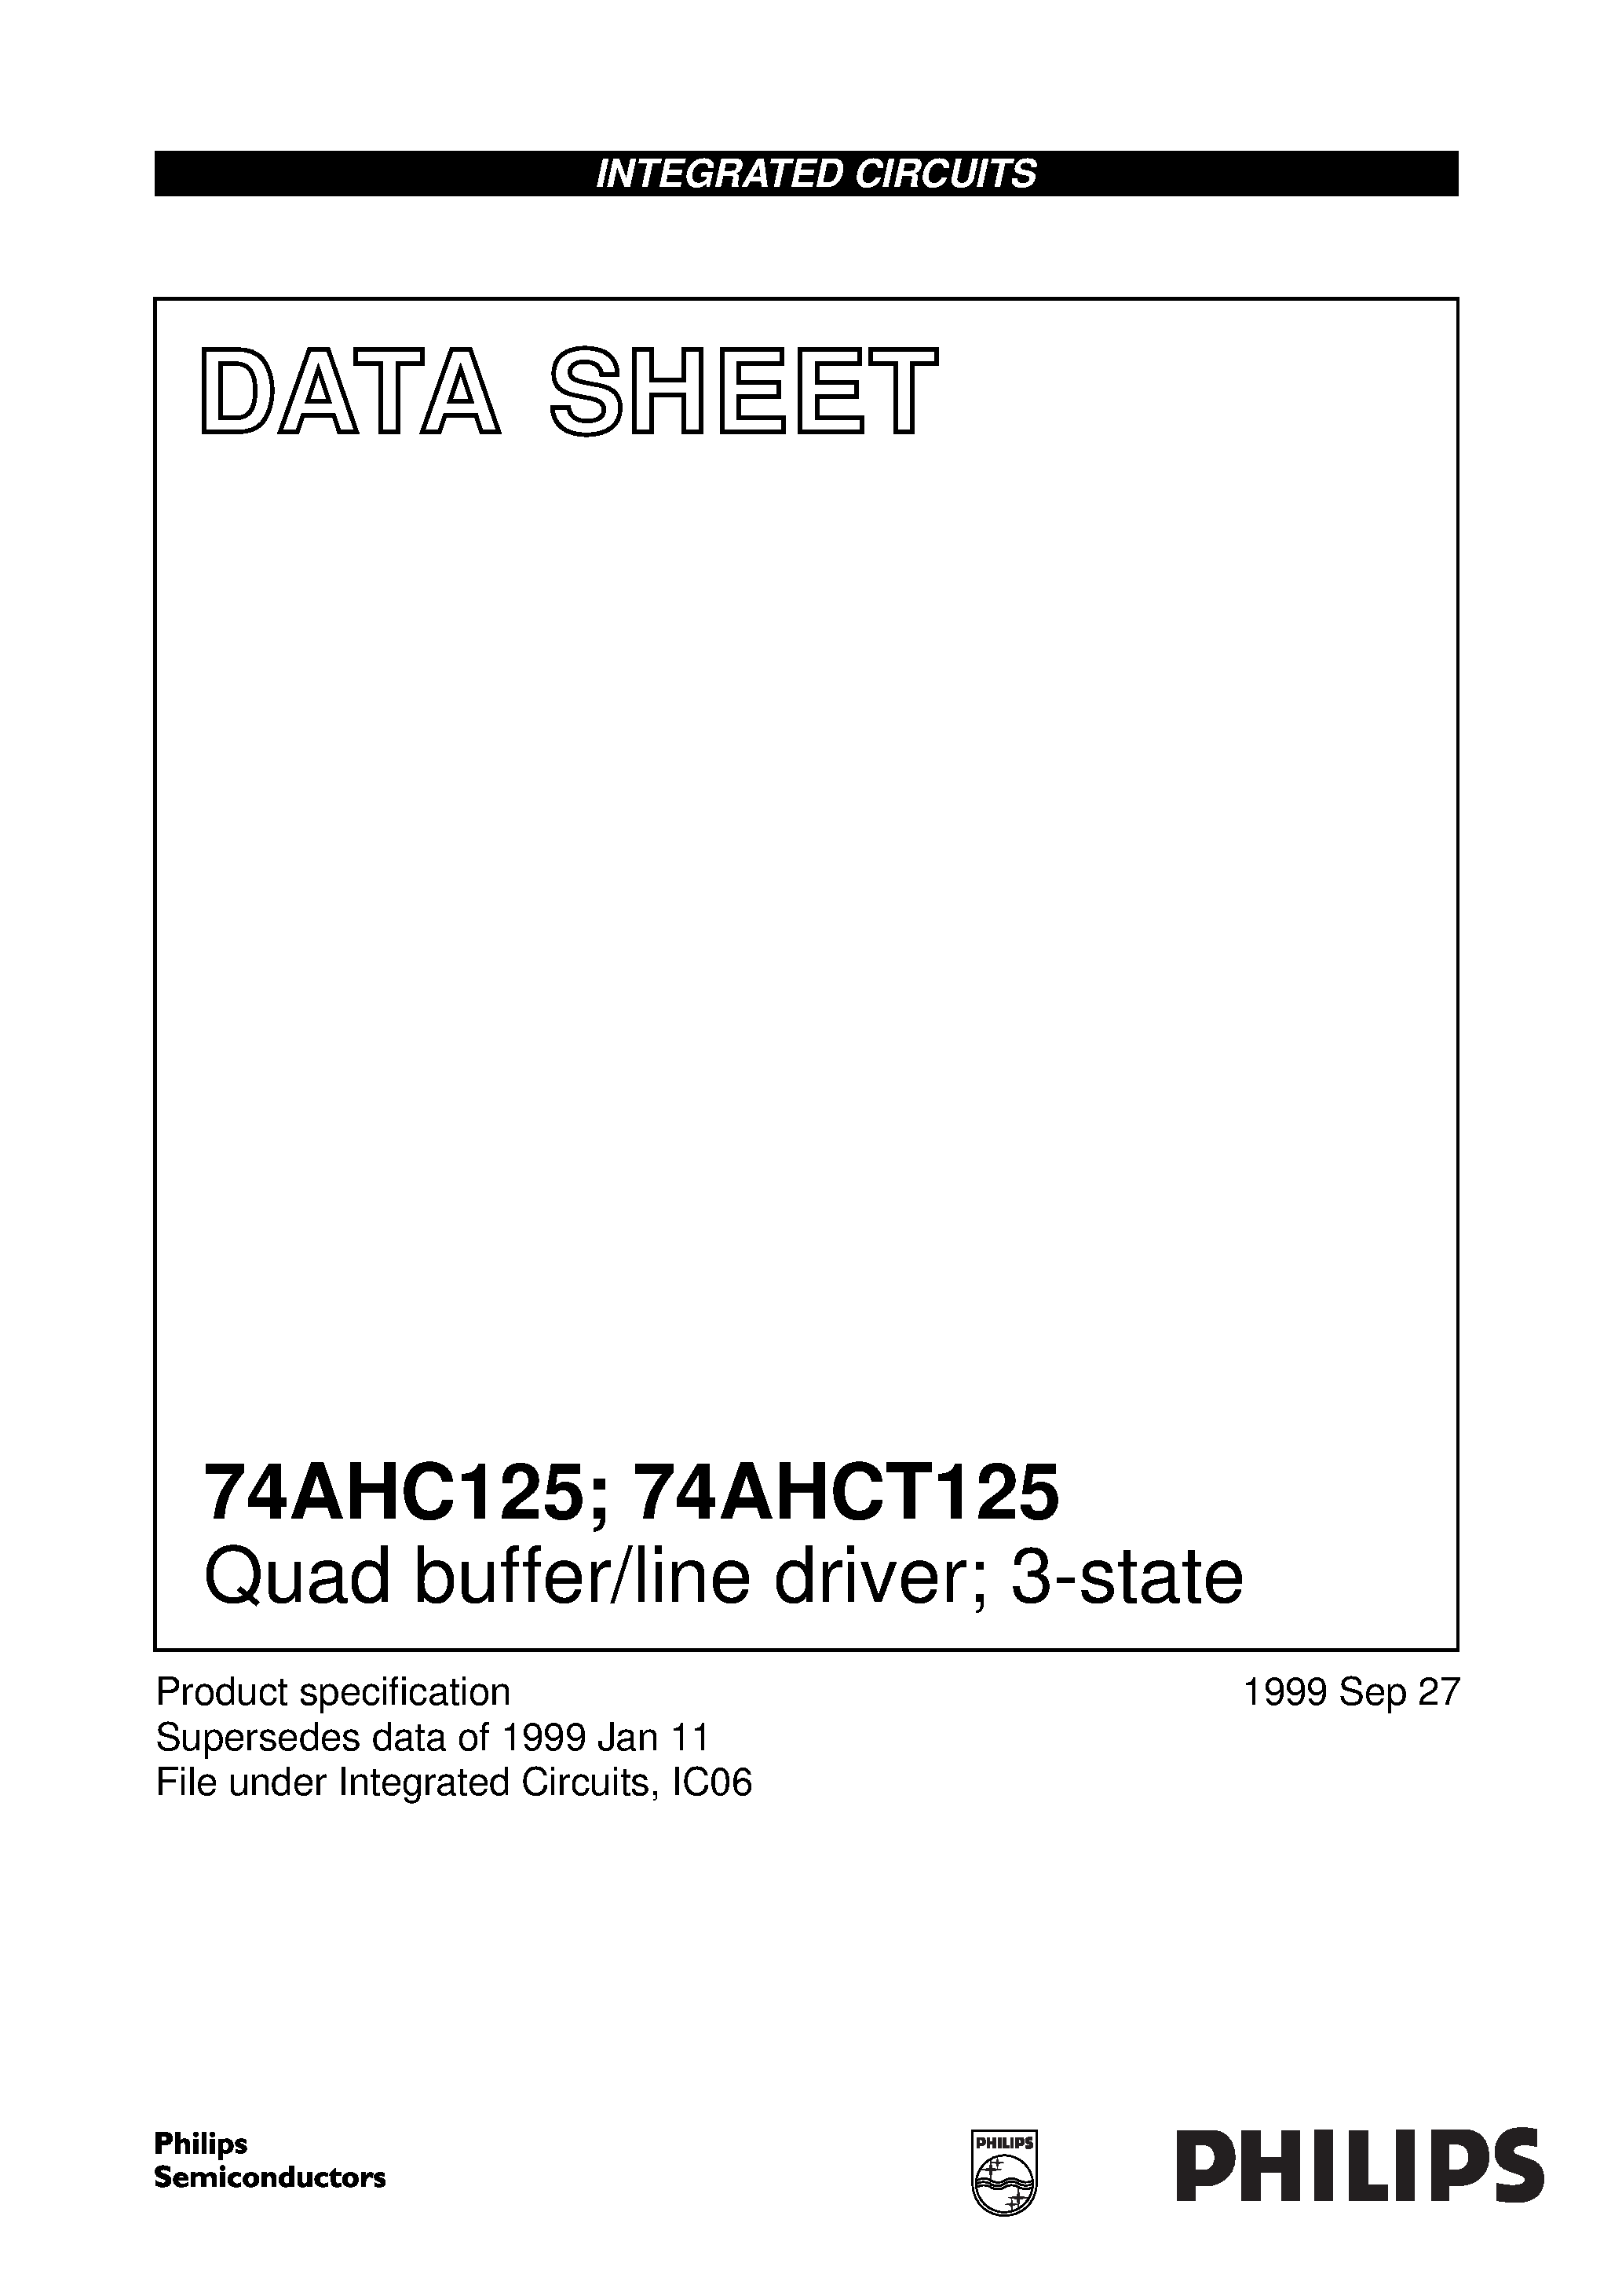 Даташит 74AHC125D - Quad buffer/line driver; 3-state страница 1